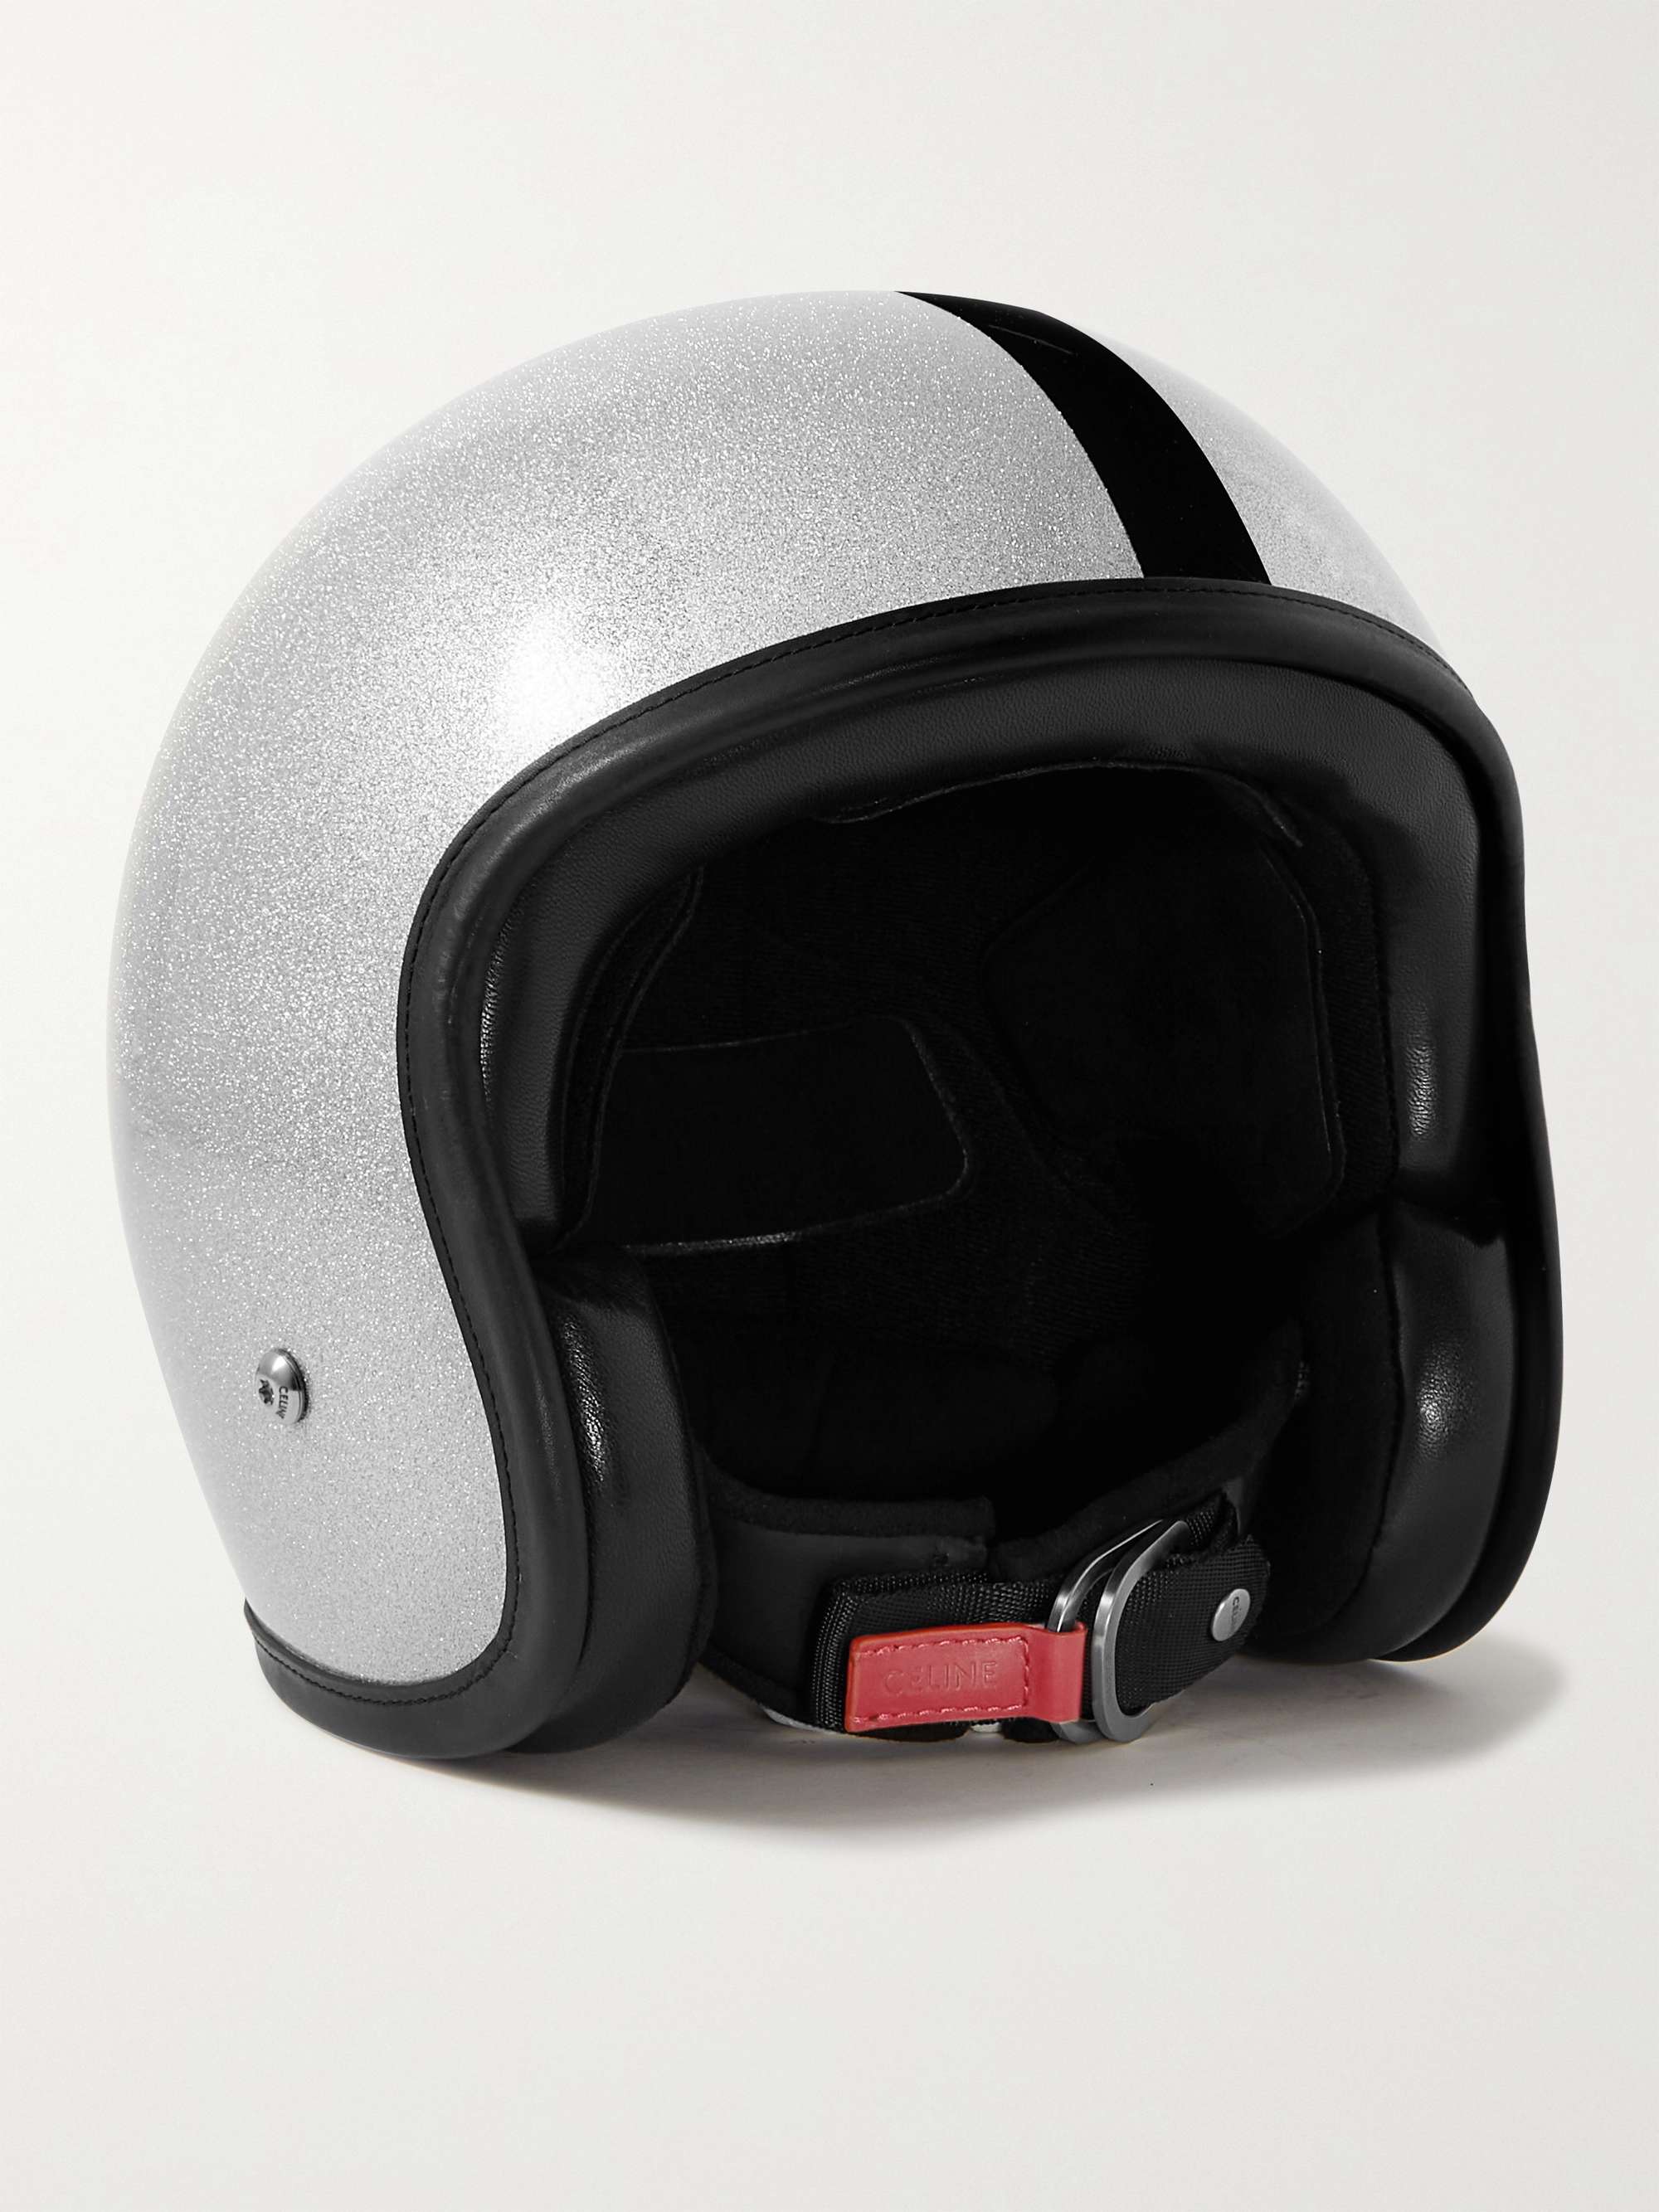 CELINE HOMME Carbon Fibre Motorcycle Helmet